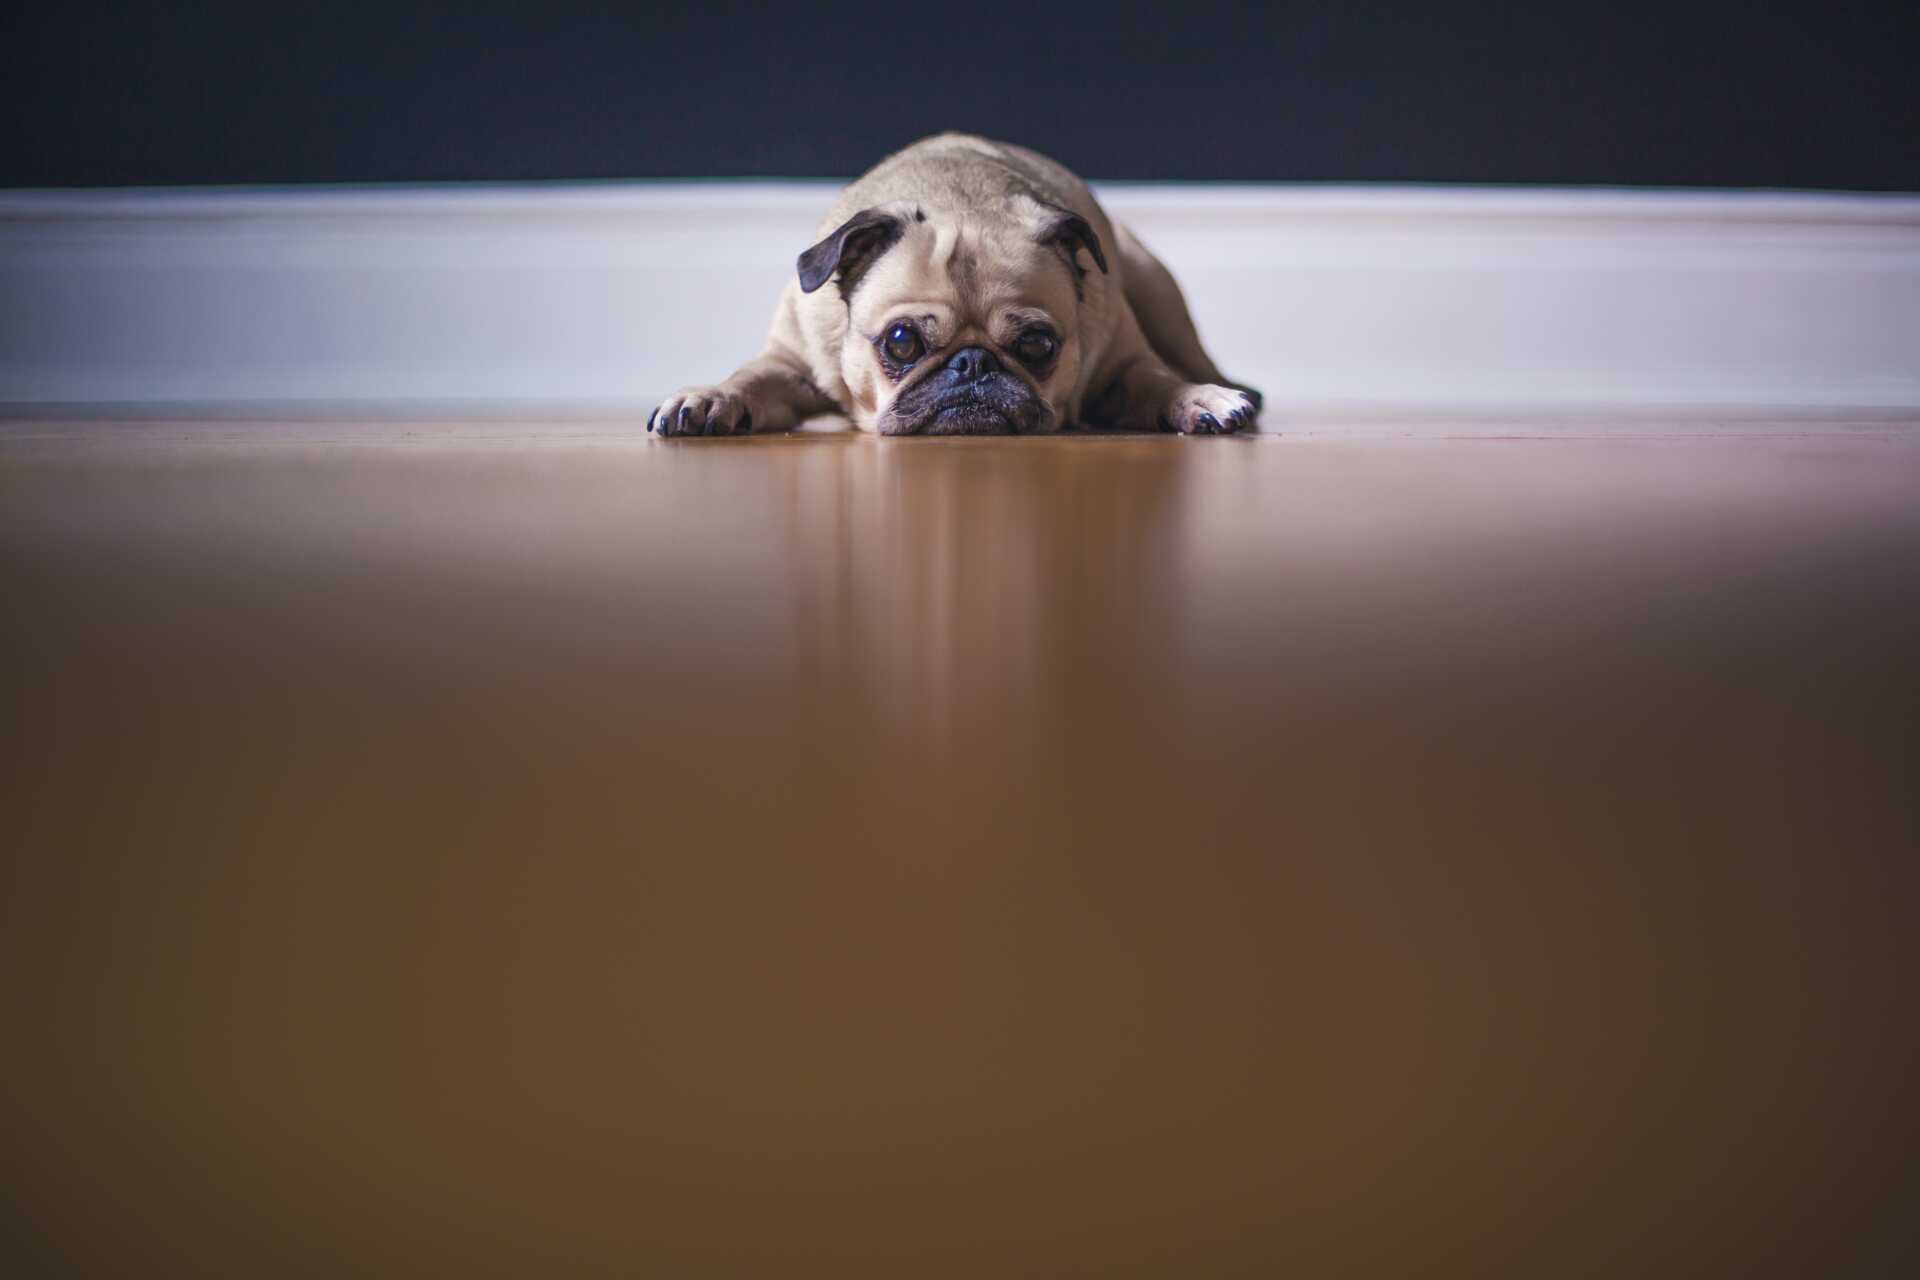 Pug looking sad laying on the floor